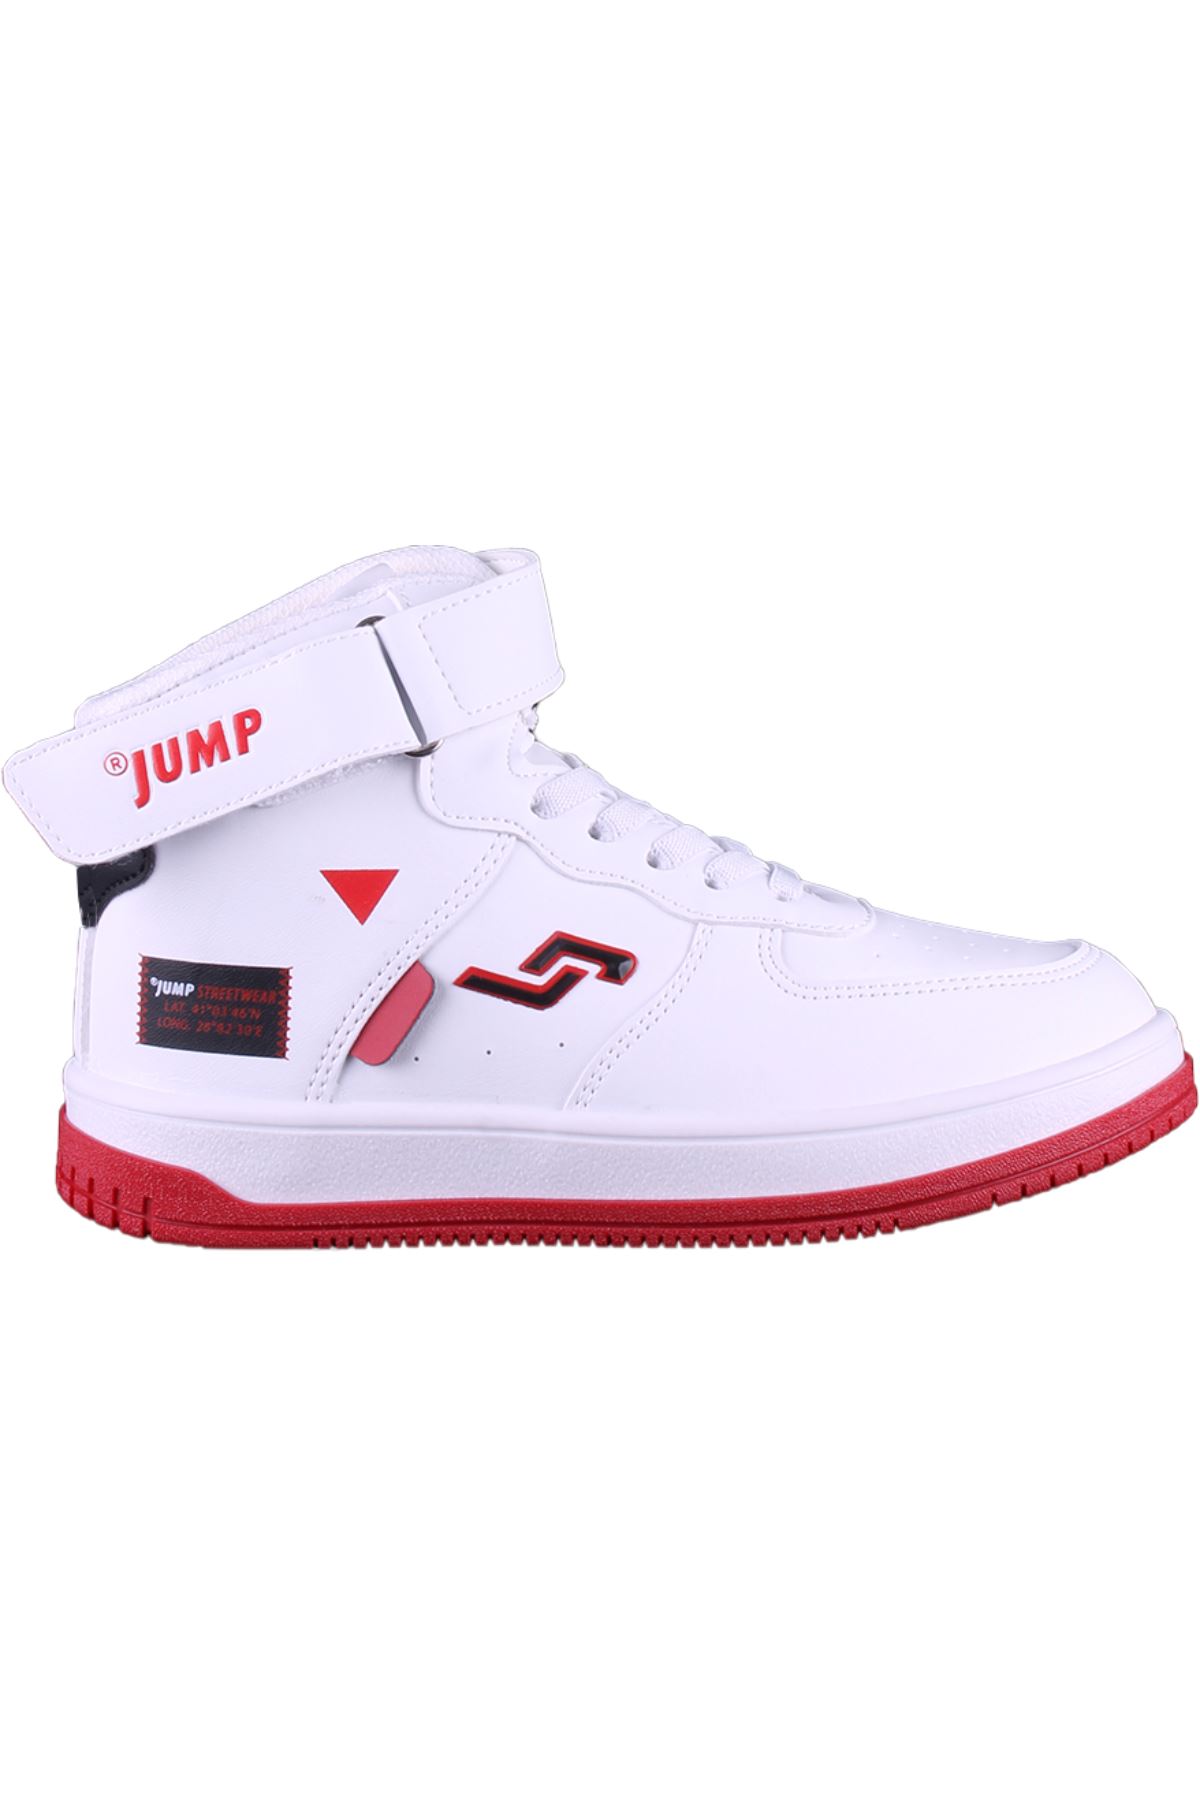 Jump Unisex Beyaz Spor Ayakkabı - 27834F